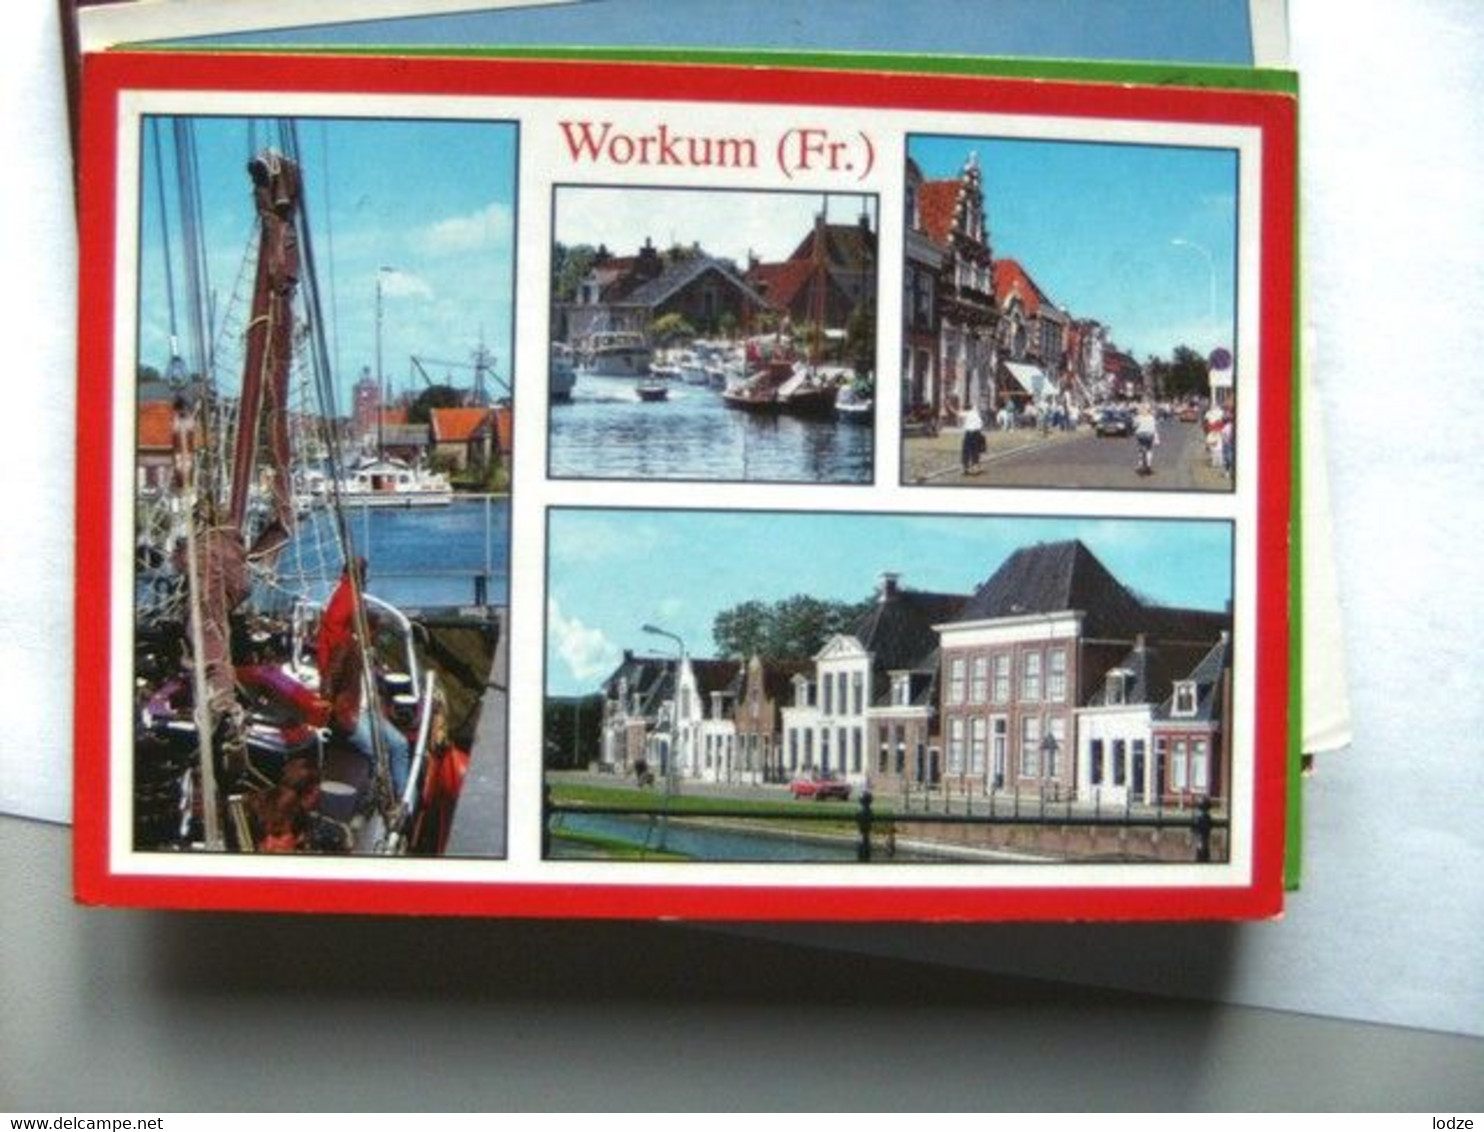 Nederland Holland Pays Bas Workum 33 - Workum